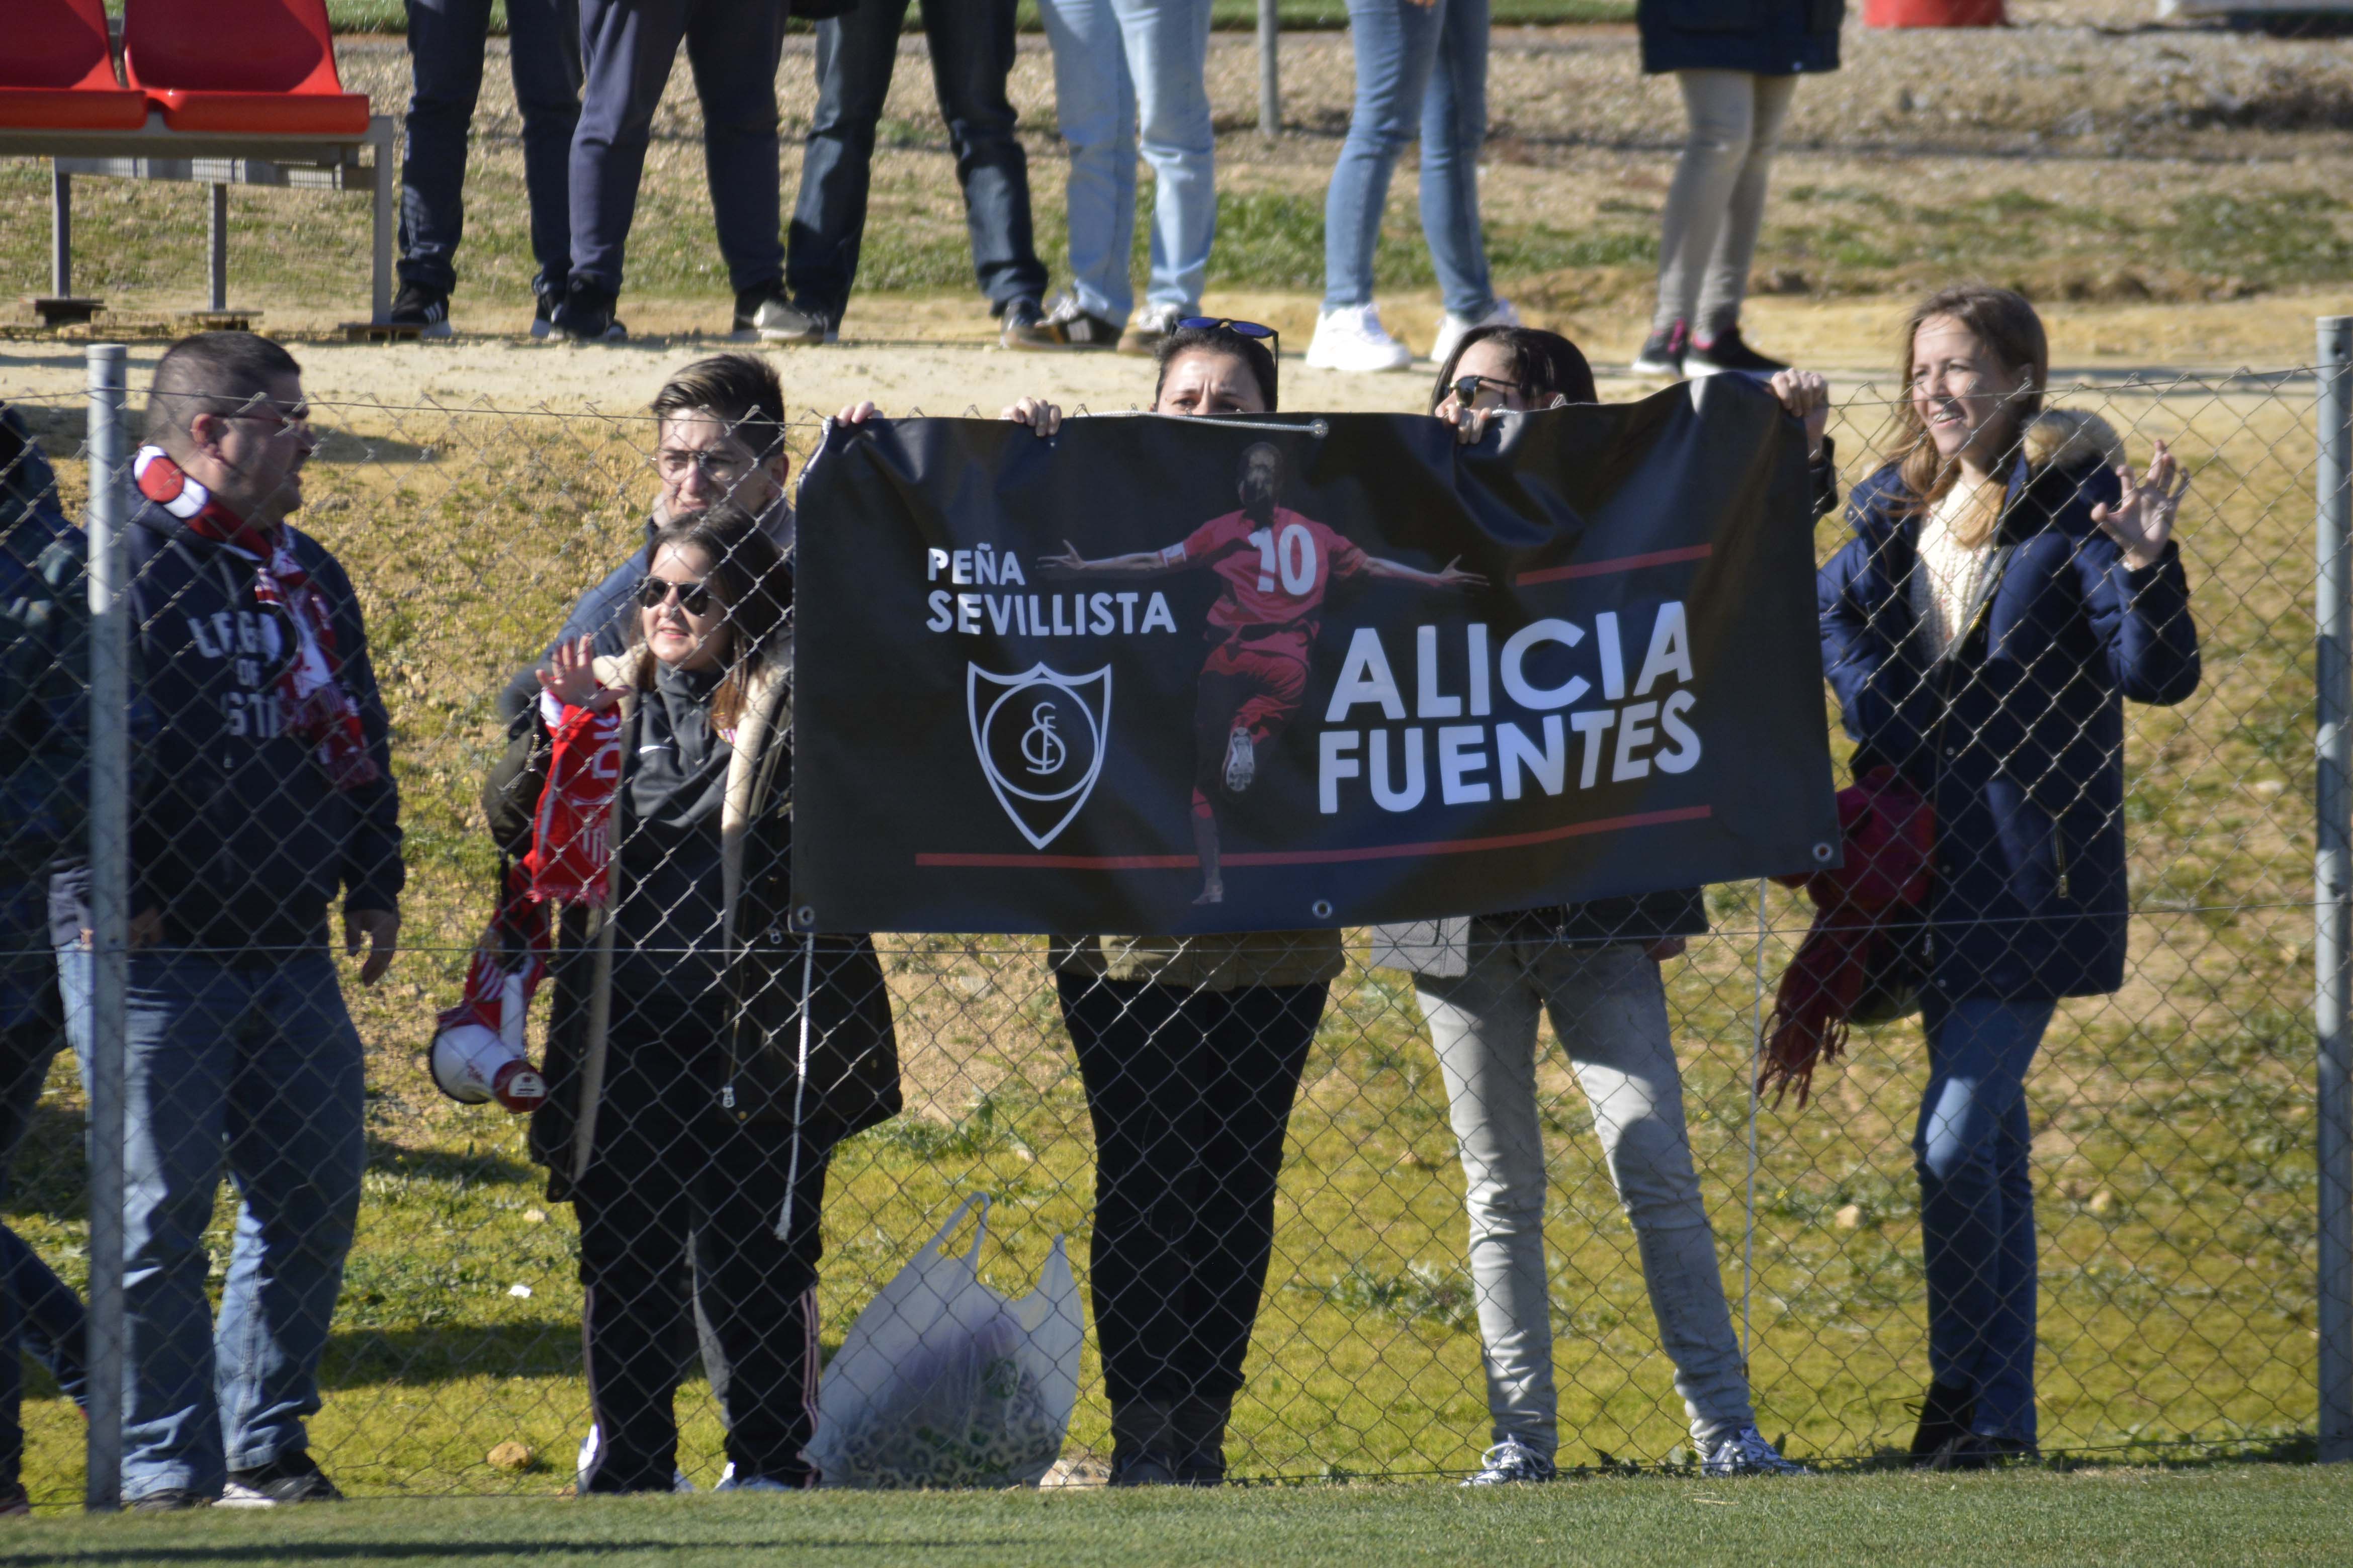 Peña Sevillista Alicia Fuentes Sevilla FC